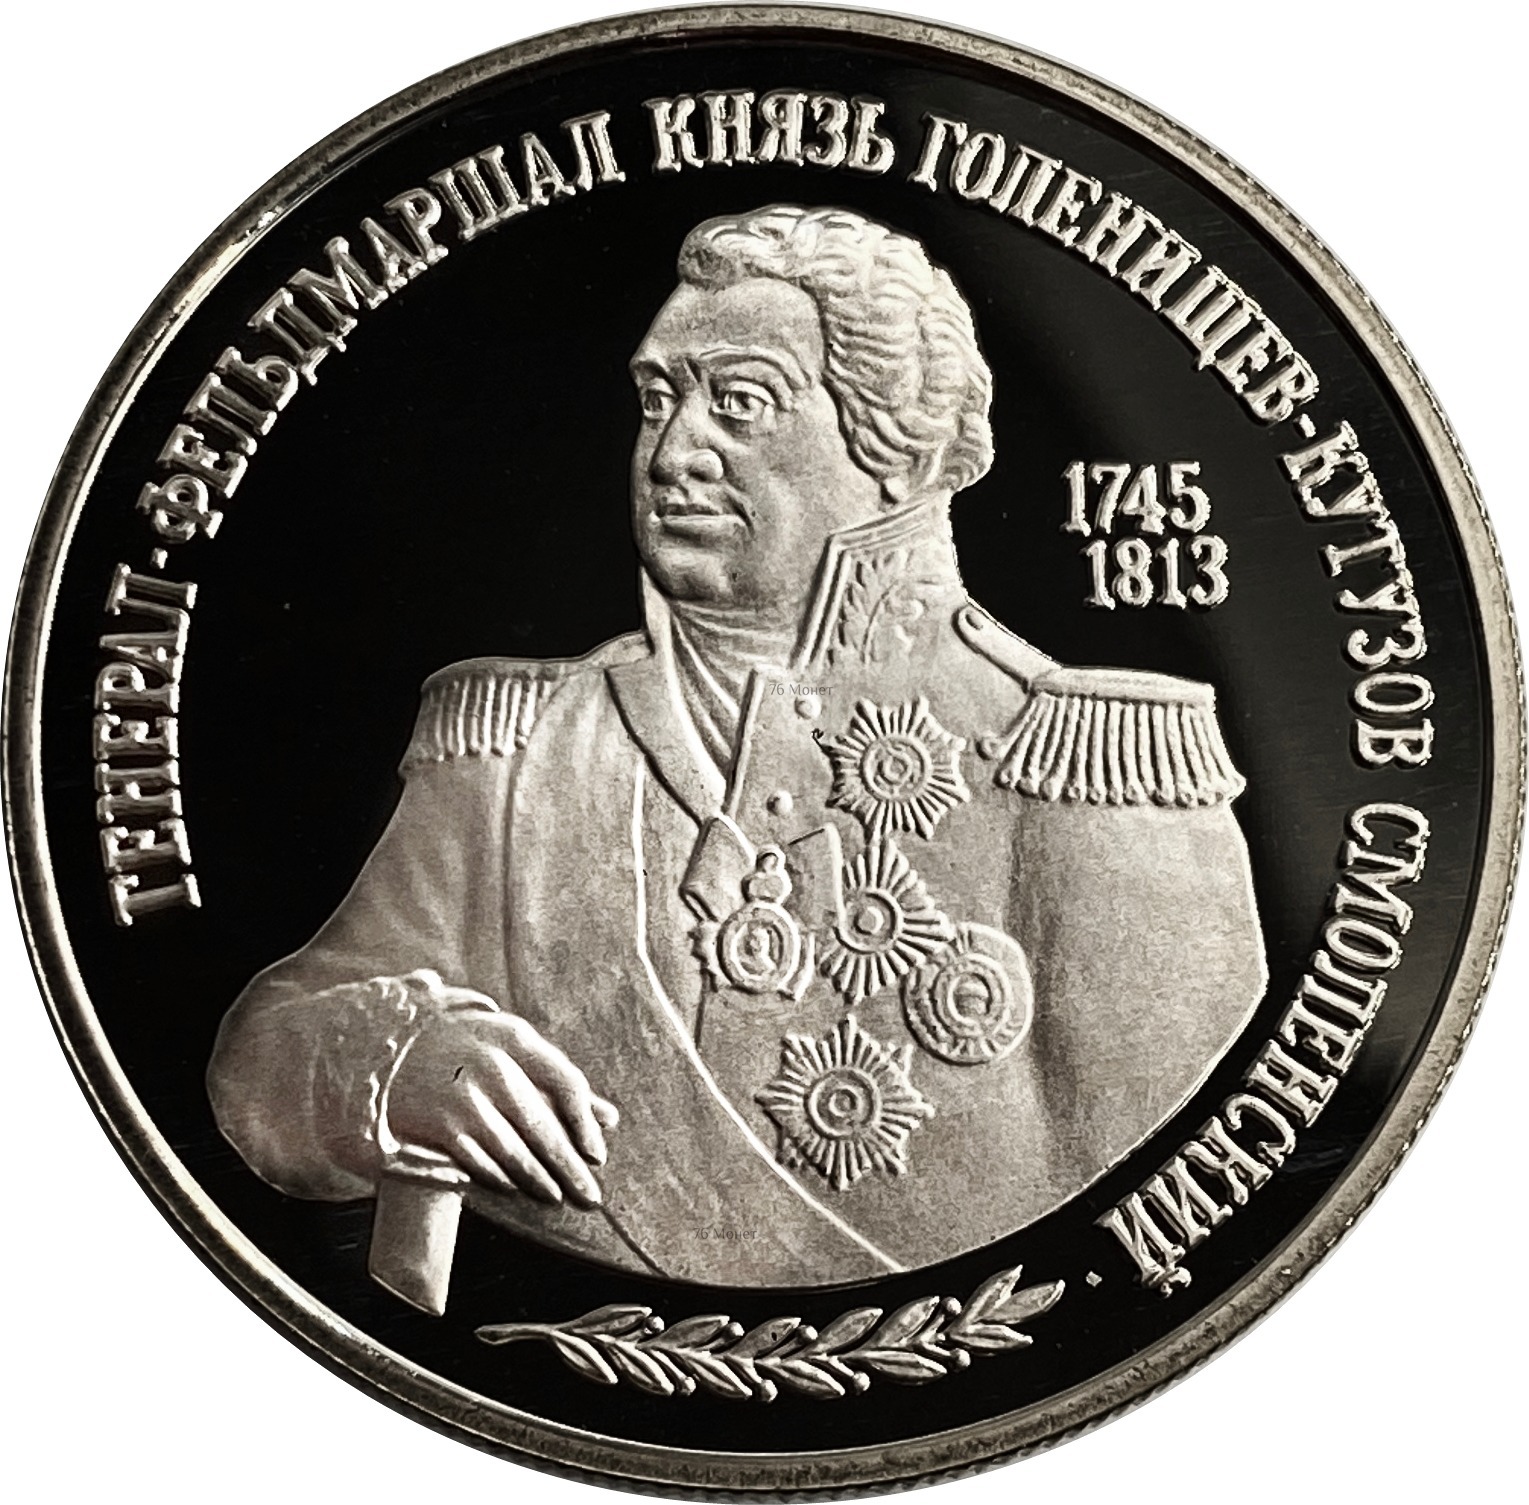 Купить монеты официально. 2 Рубля юбилейные Кутузов. 250 Лет со дня рождения Кутузова. 2 Рубля м.и. Кутузов.